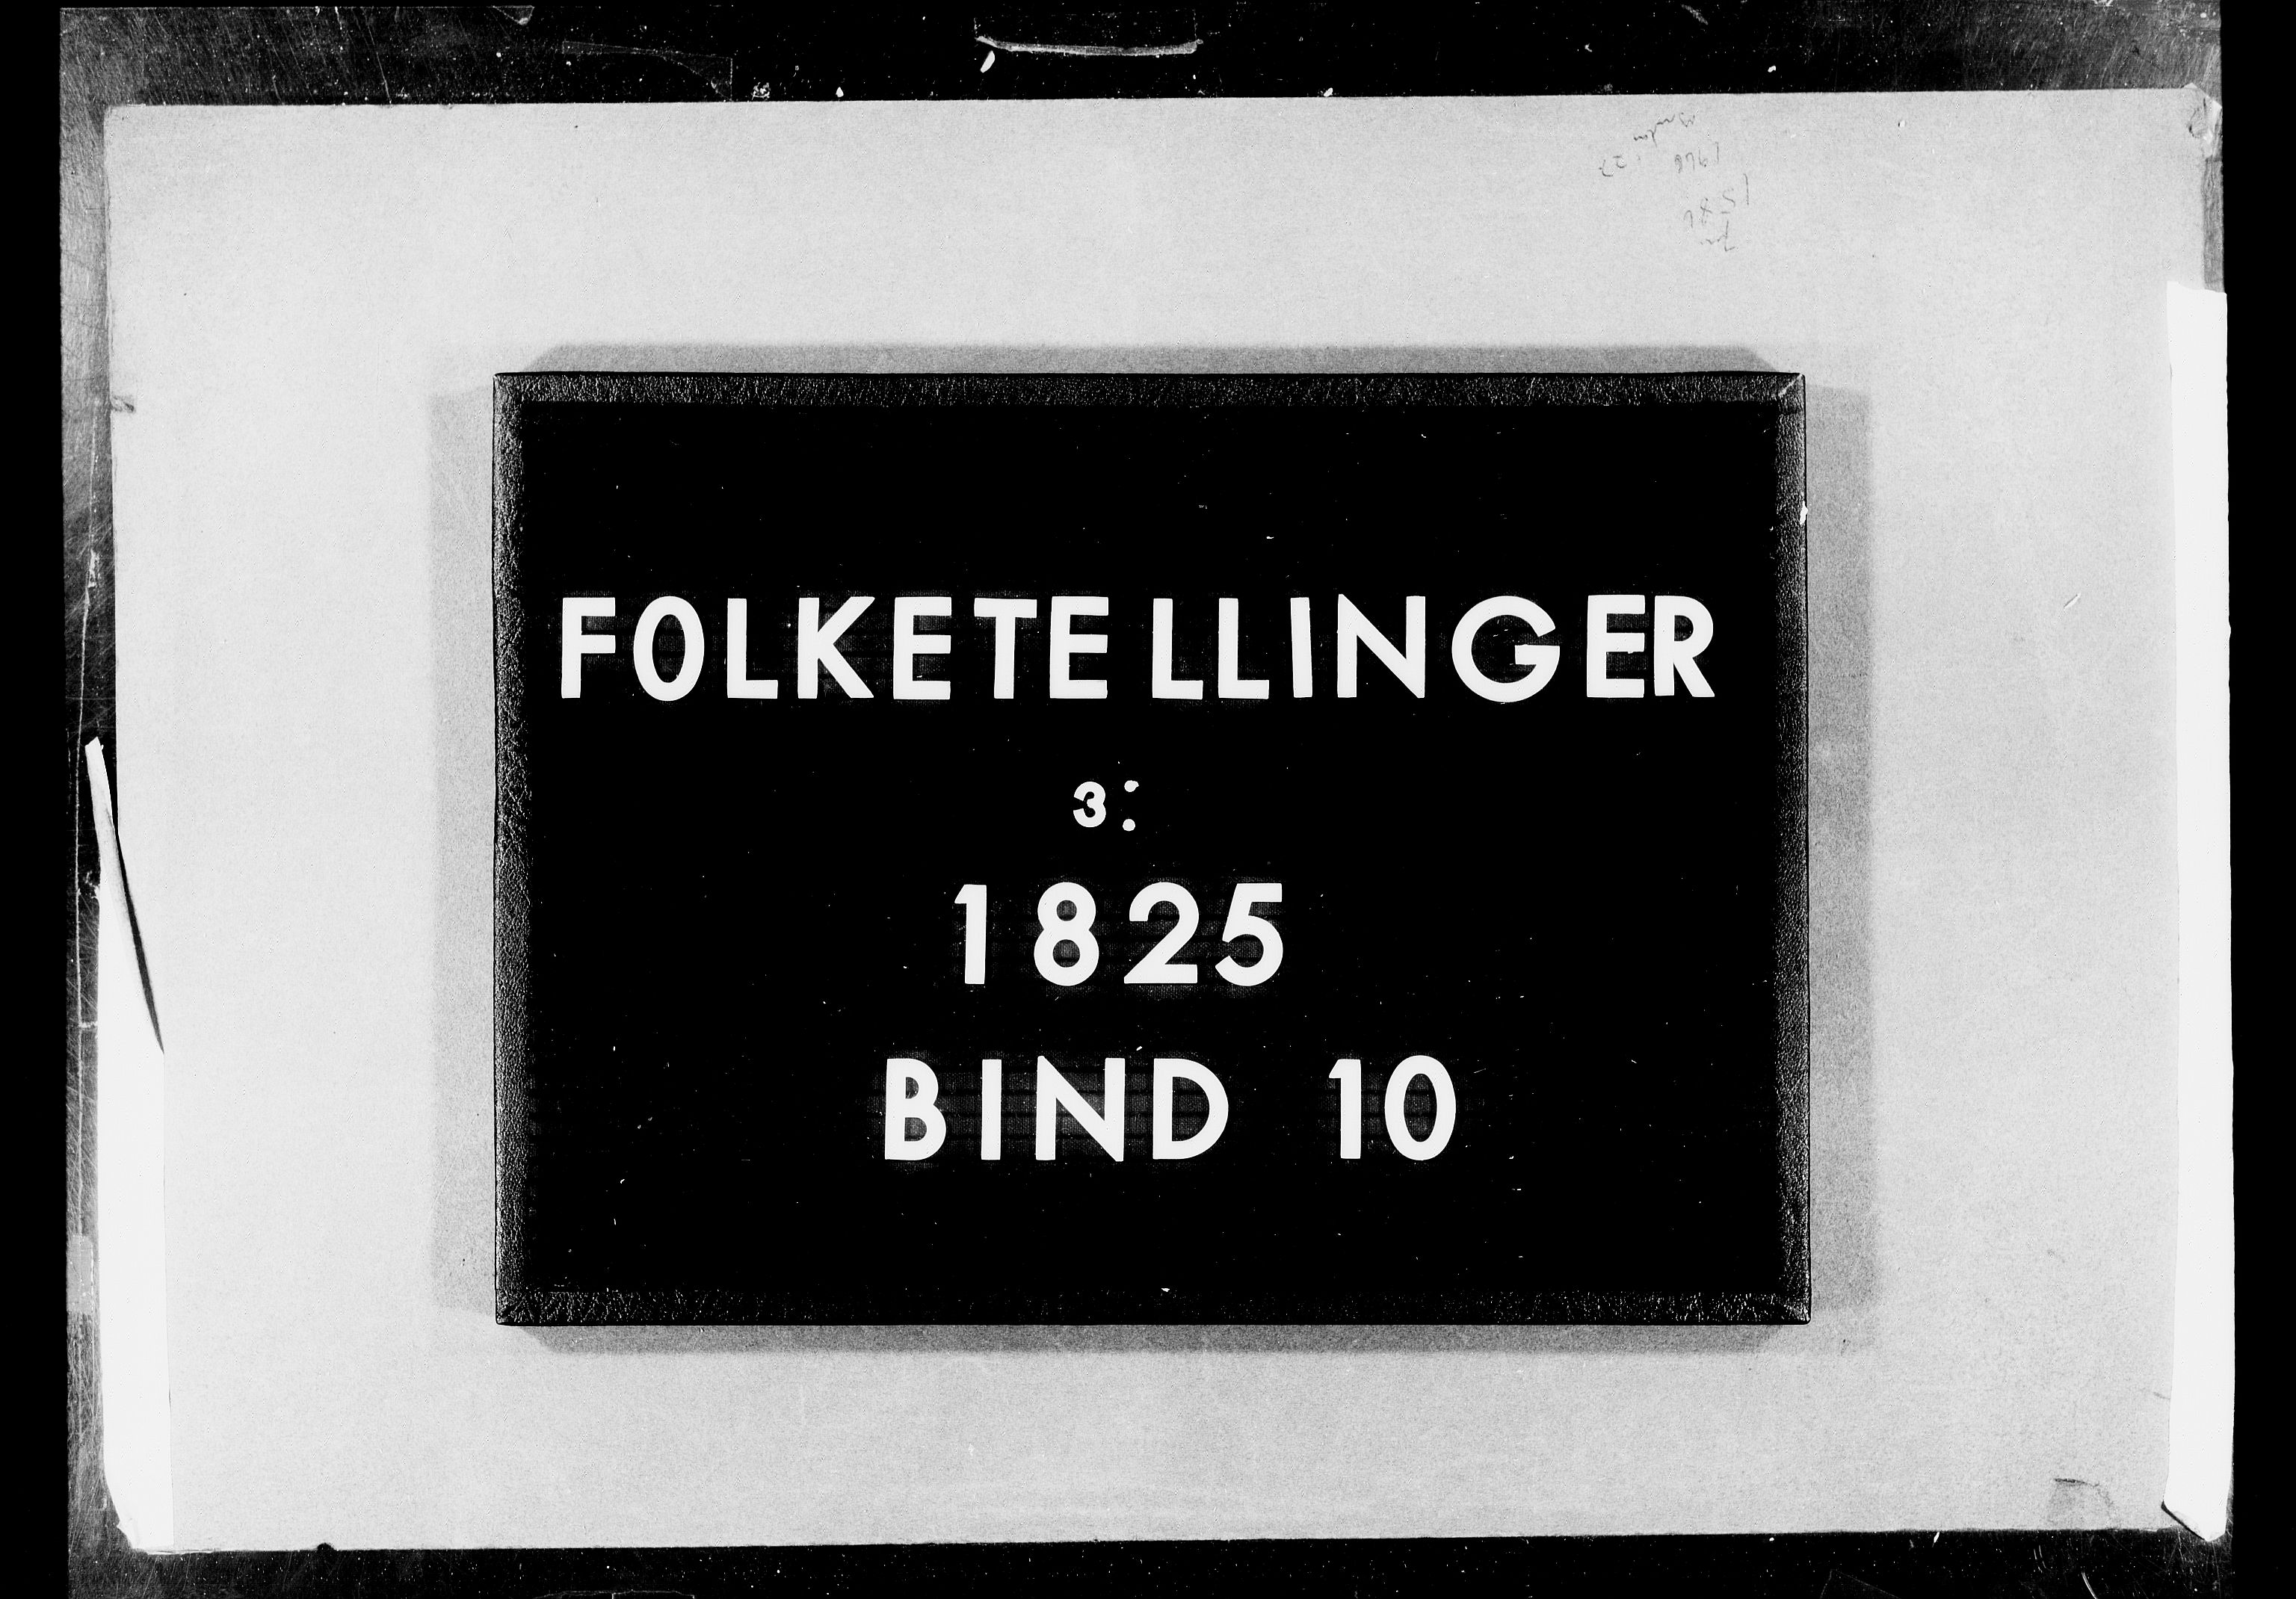 RA, Folketellingen 1825, bind 10: Nedenes og Råbyggelaget amt, 1825